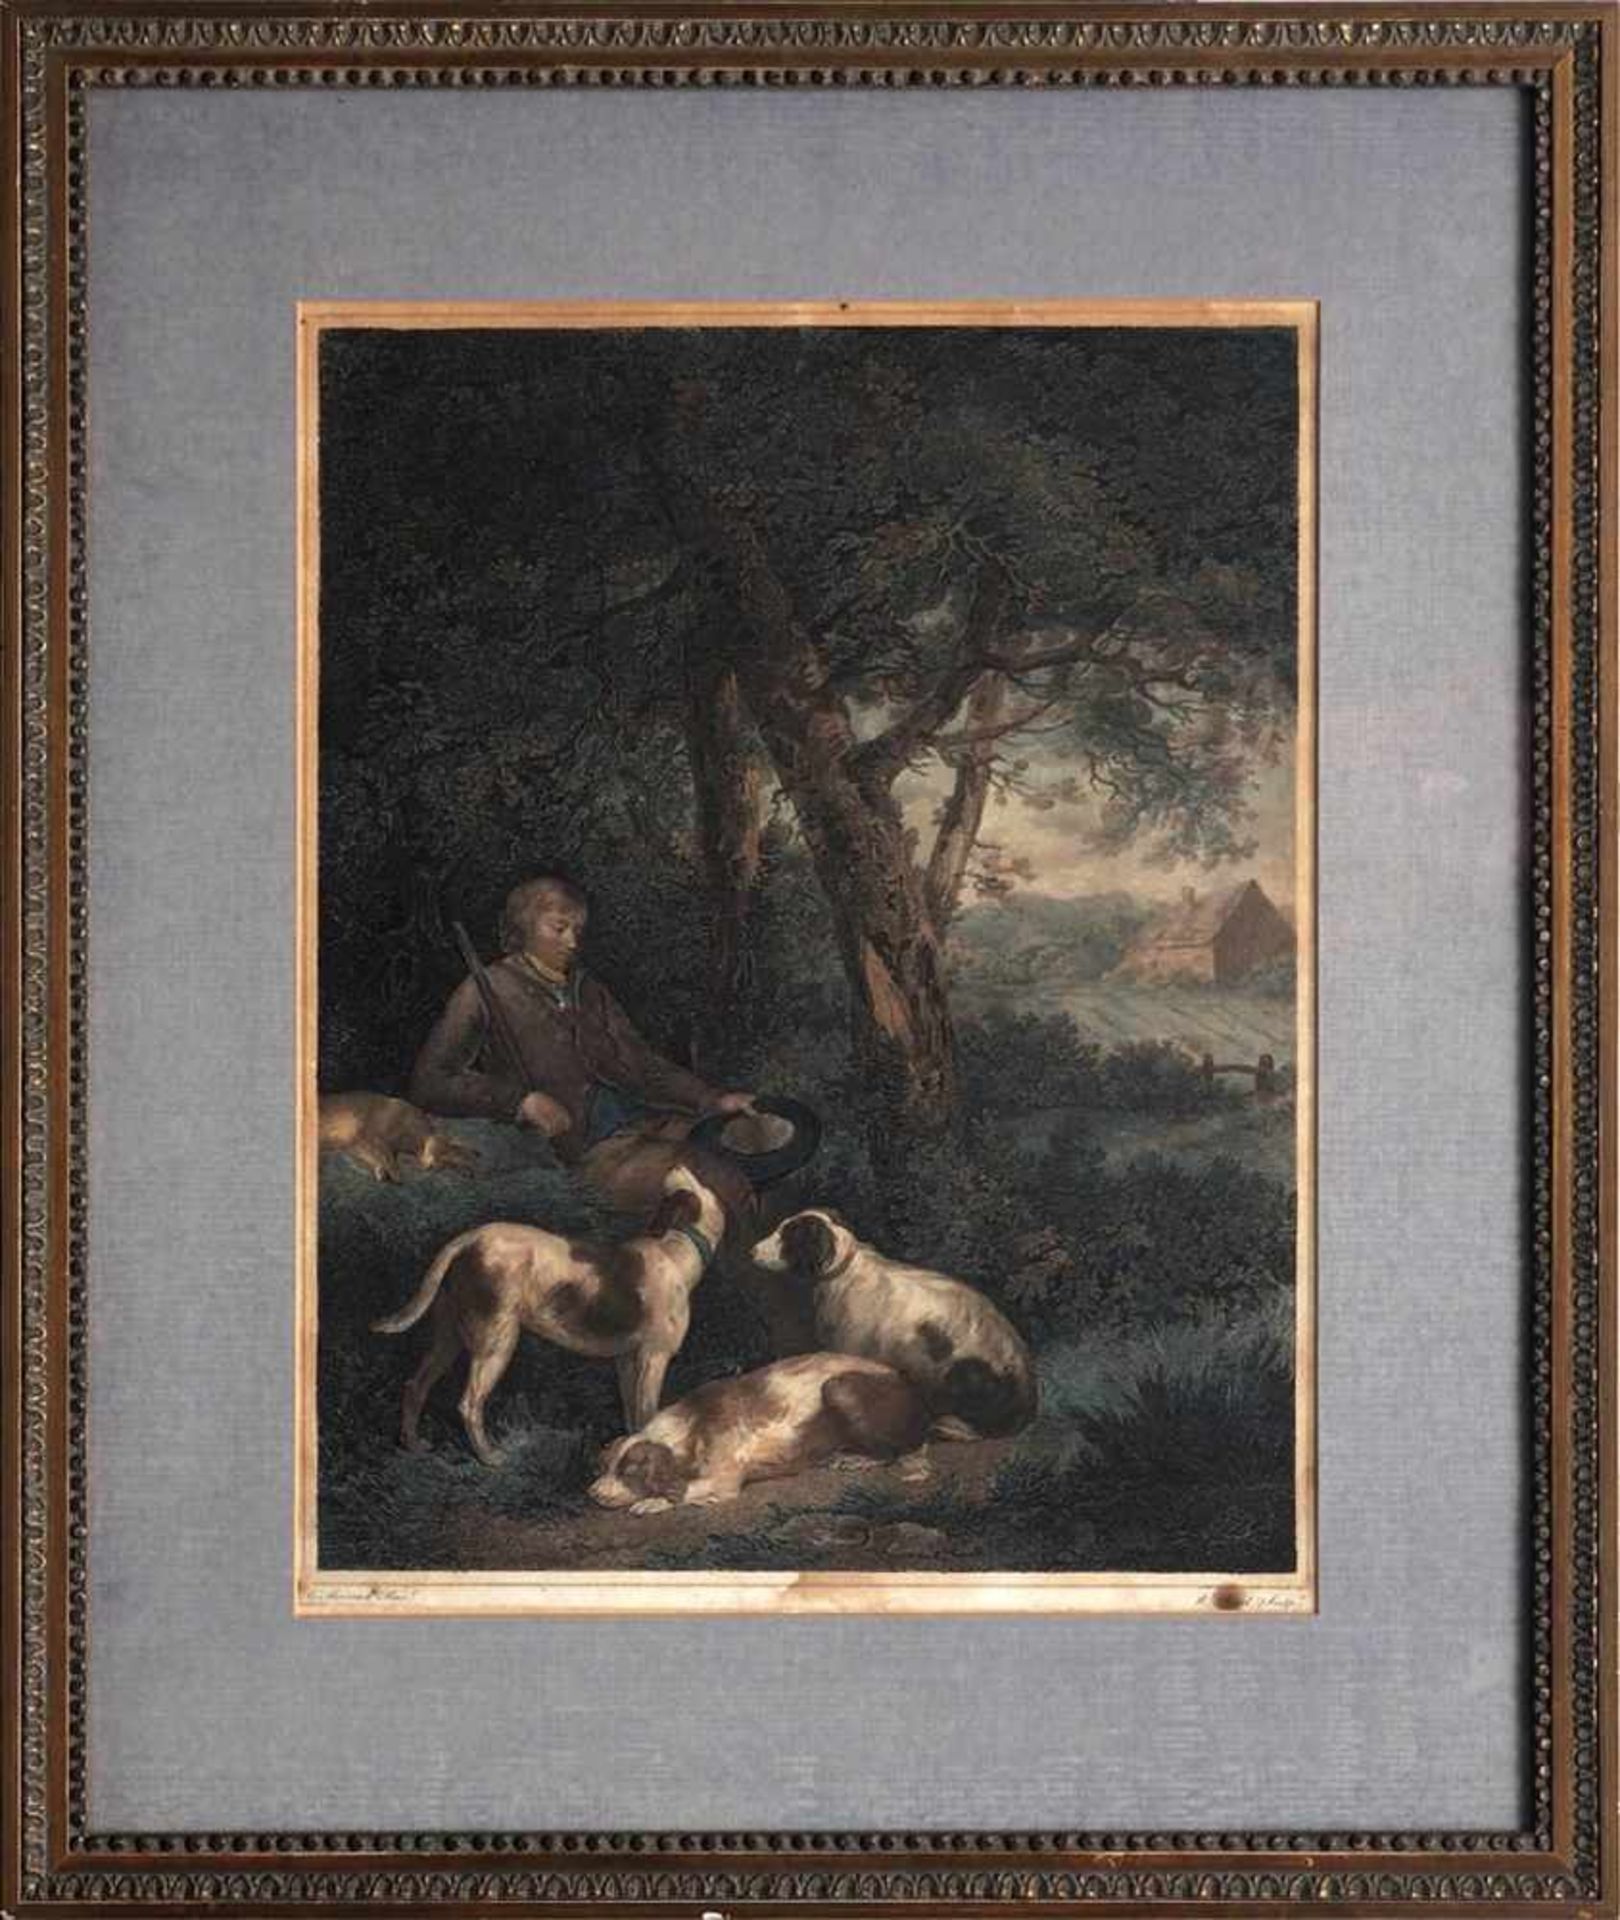 Bond, William, 1766 - 1839Kupferstich, bet. "The weary Sportsman" nach einem Gemälde von G. Morland.